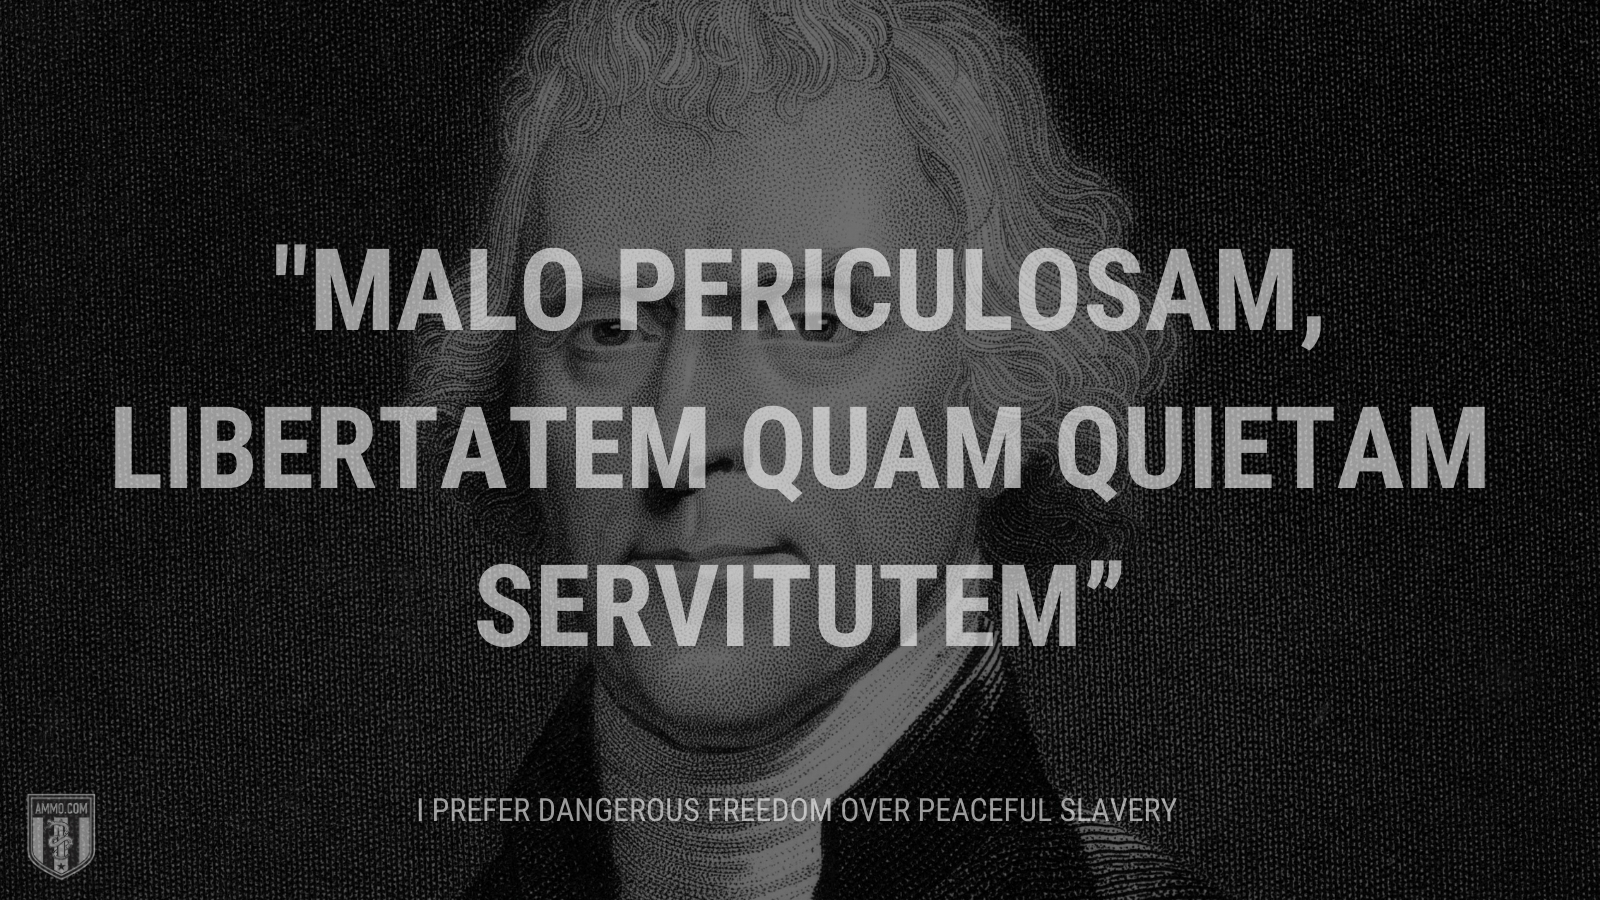 “Malo periculosam, libertatem quam quietam servitutem” - I prefer dangerous freedom over peaceful slavery